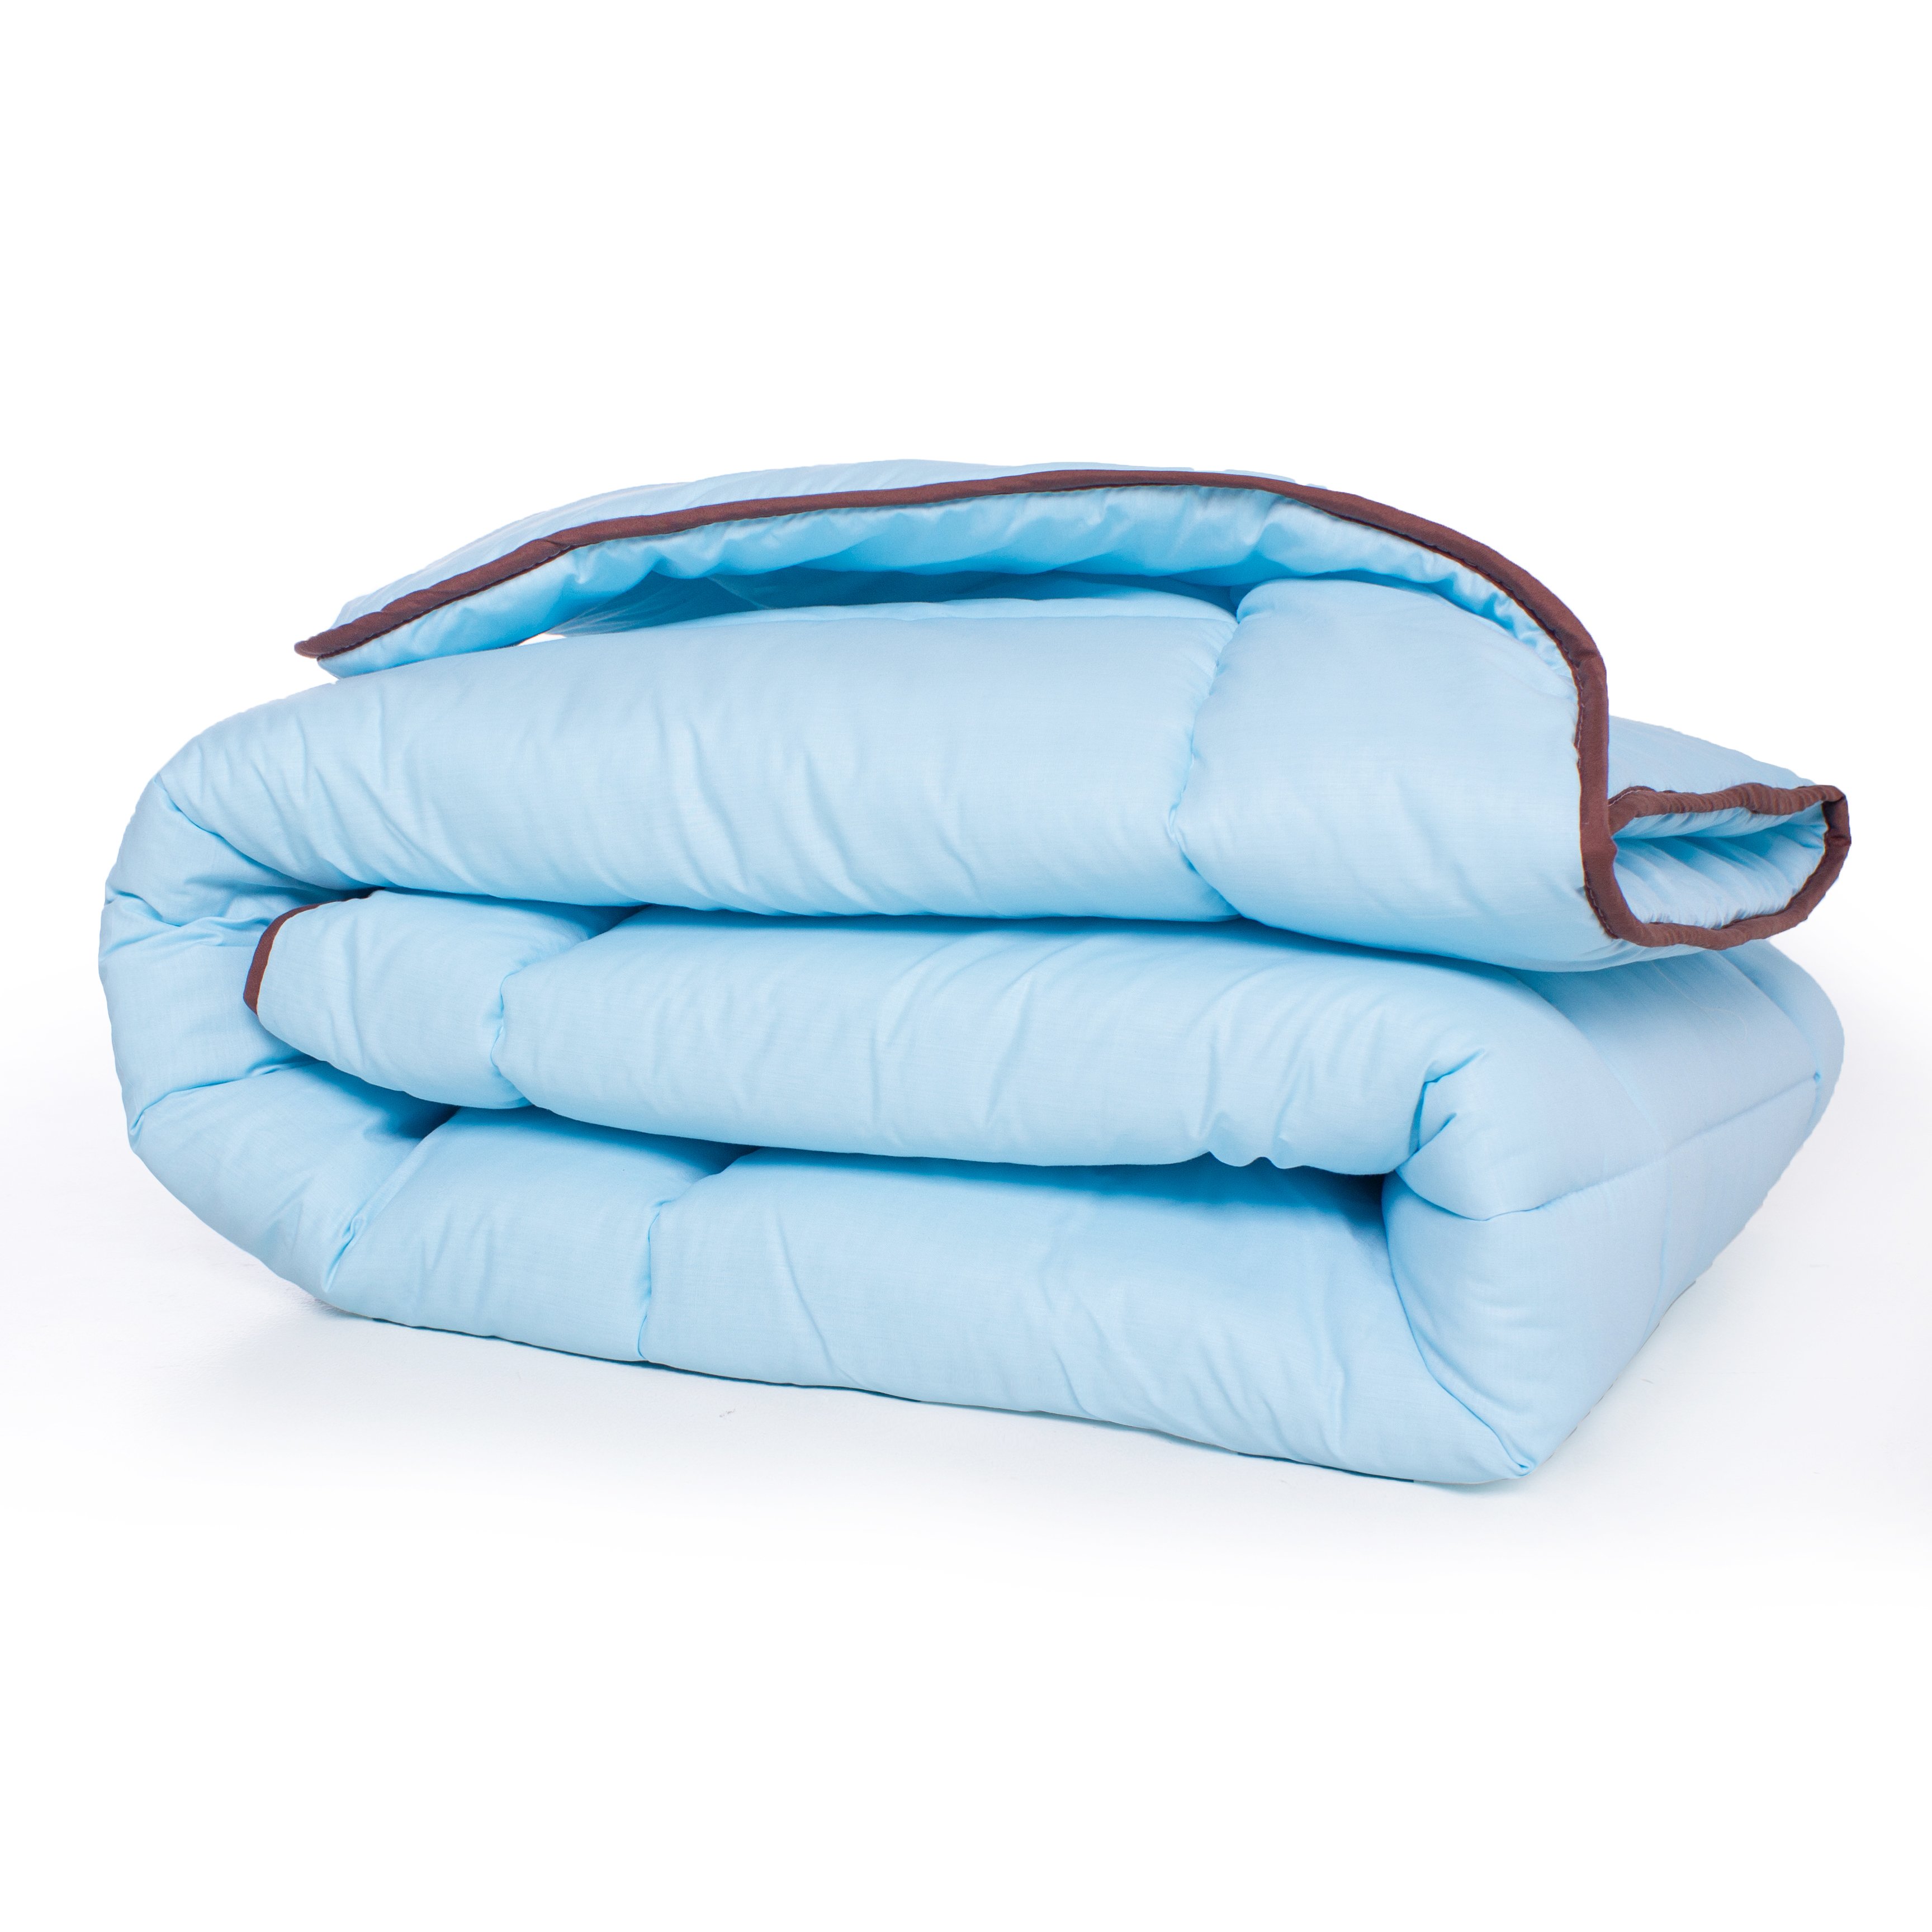 Одеяло шерстяное MirSon Valentino №0338, зимнее, 220x240 см, голубое - фото 2